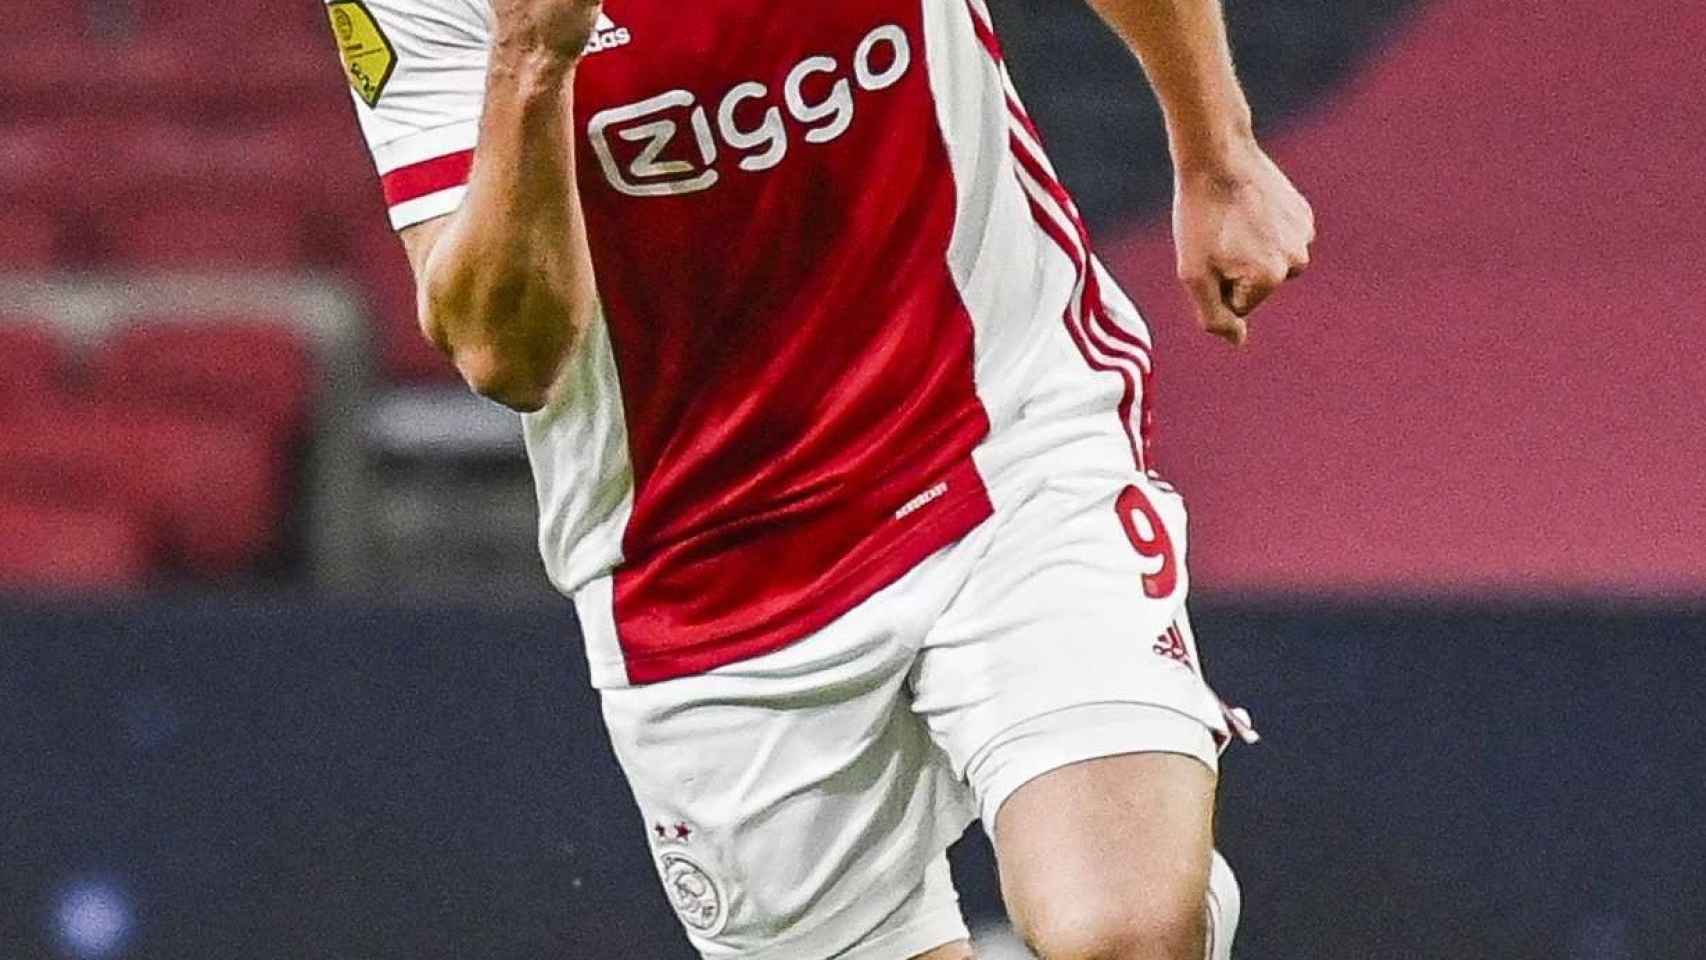 Klaas Jan Huntelaar, durante un partido con el Ajax de Amsterdam